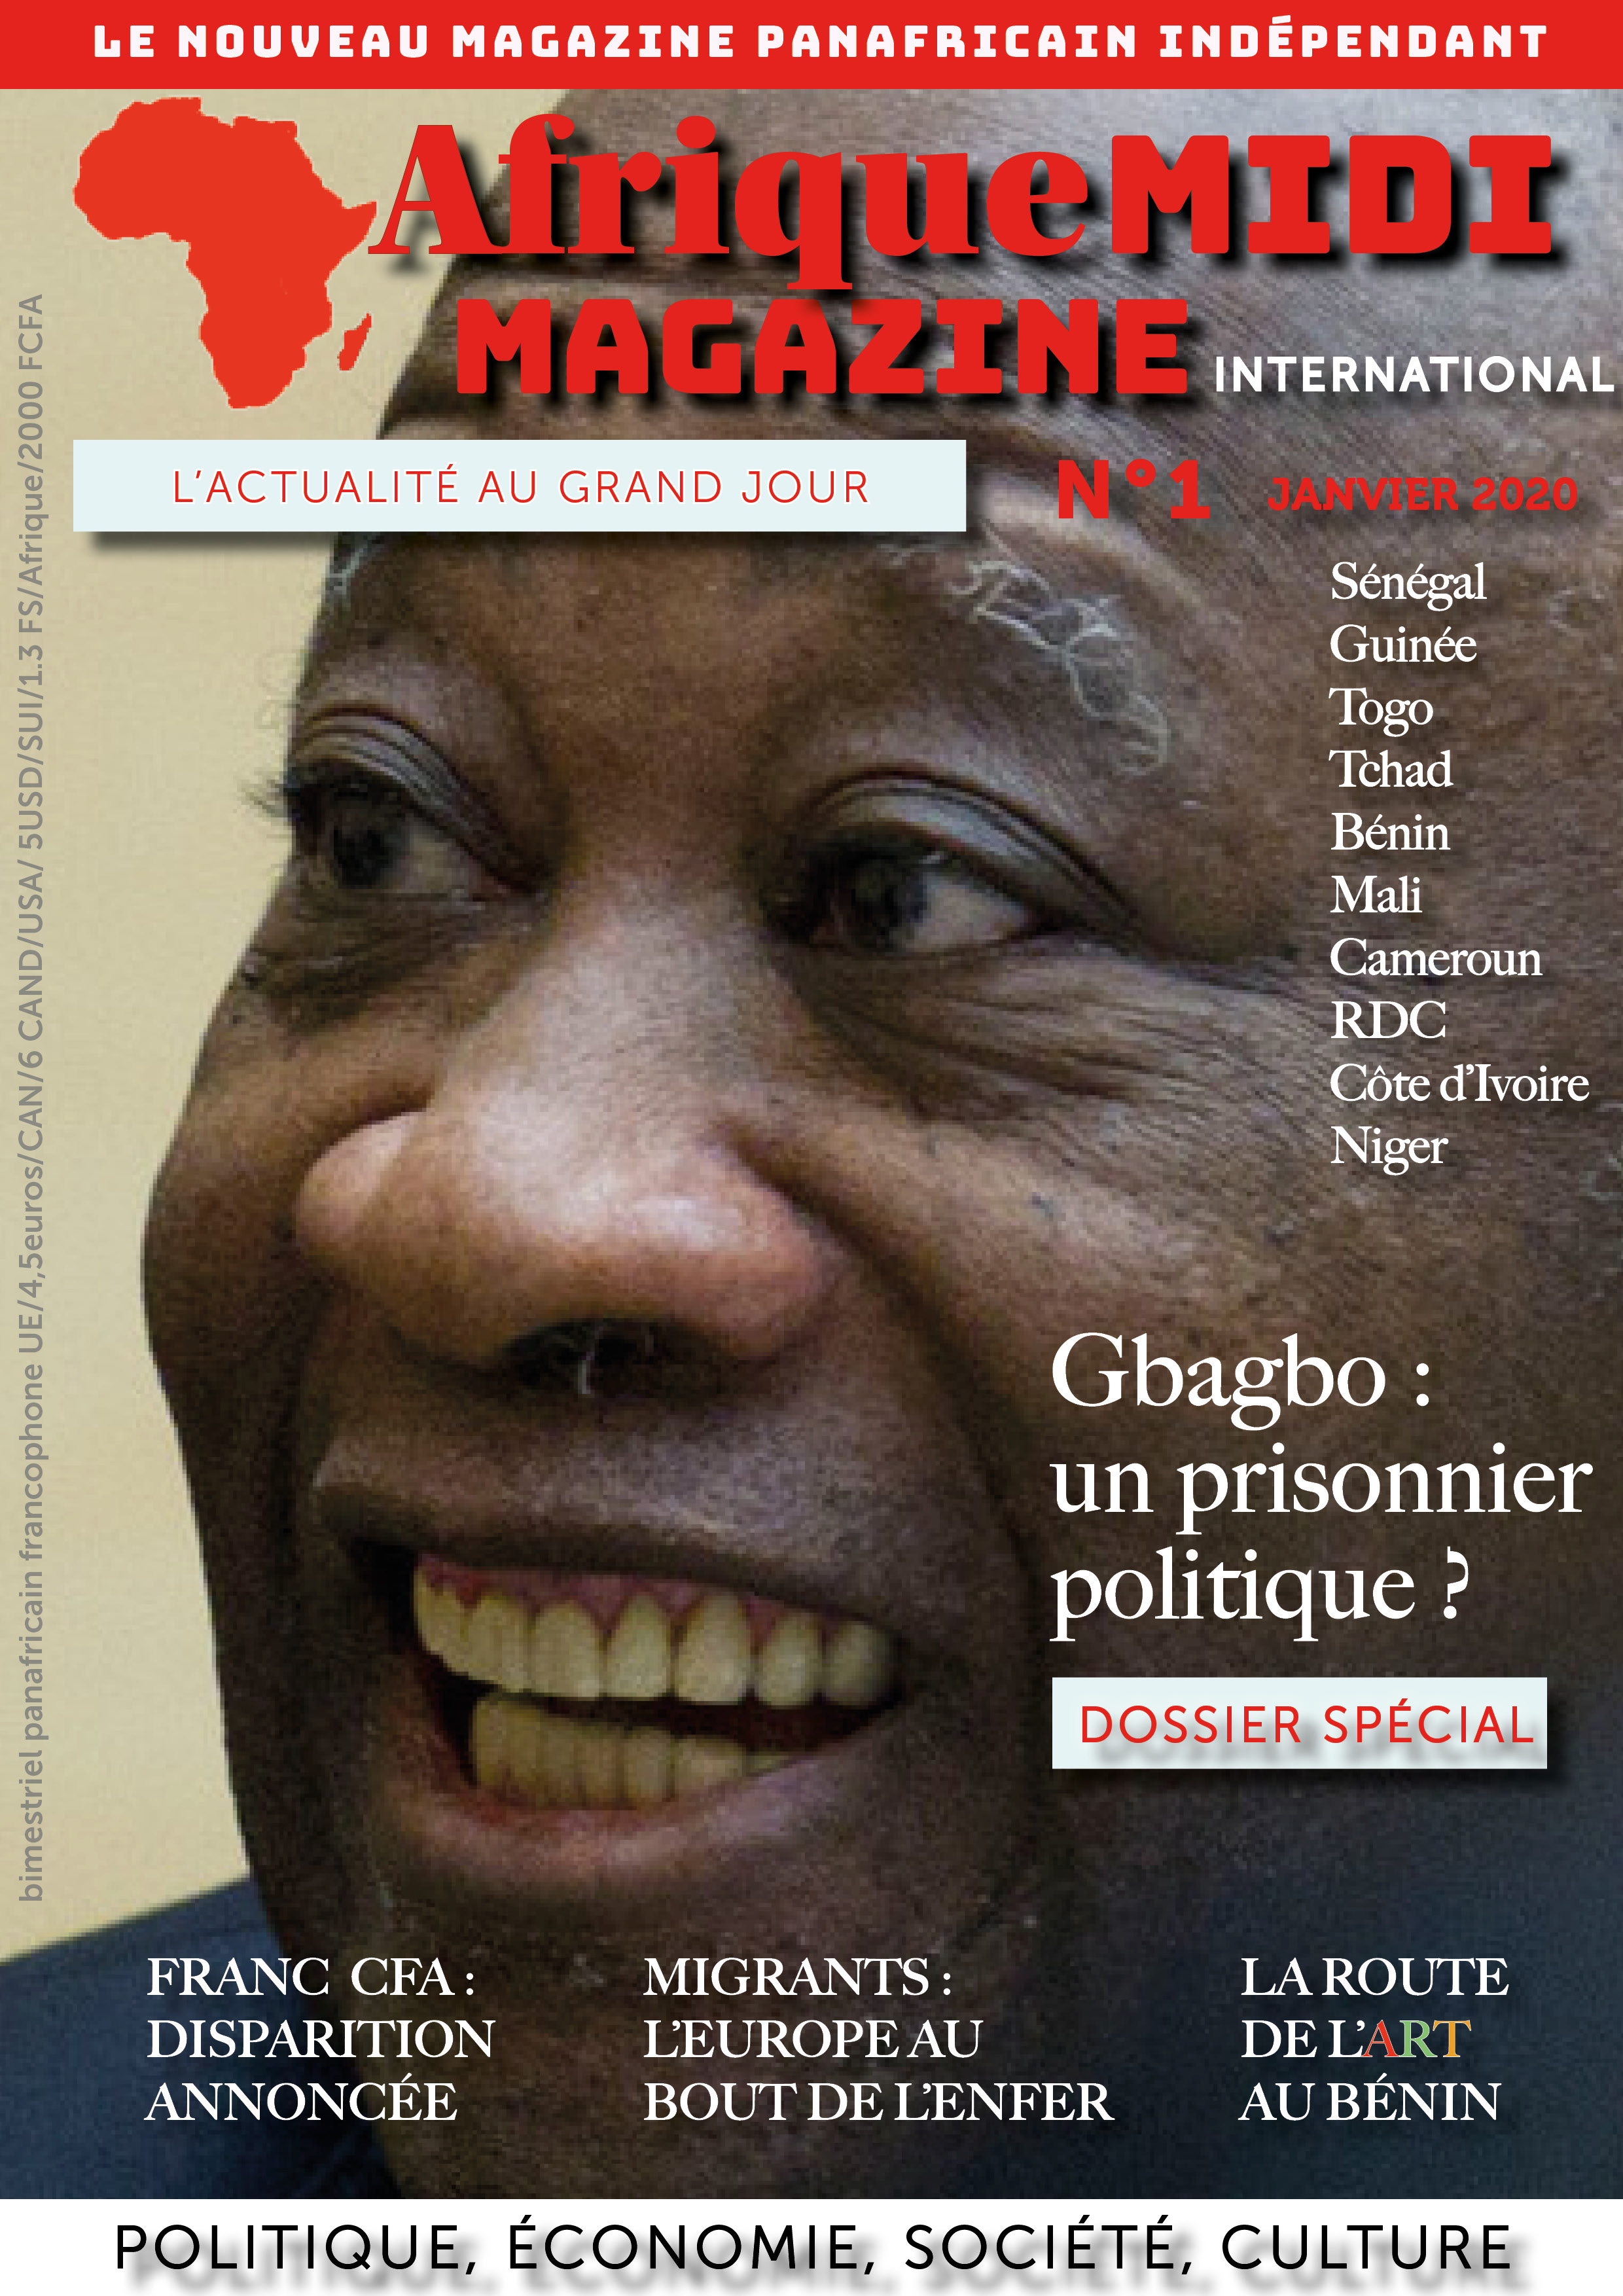 Pour commander le magazine : magazine@afriquemidi.com